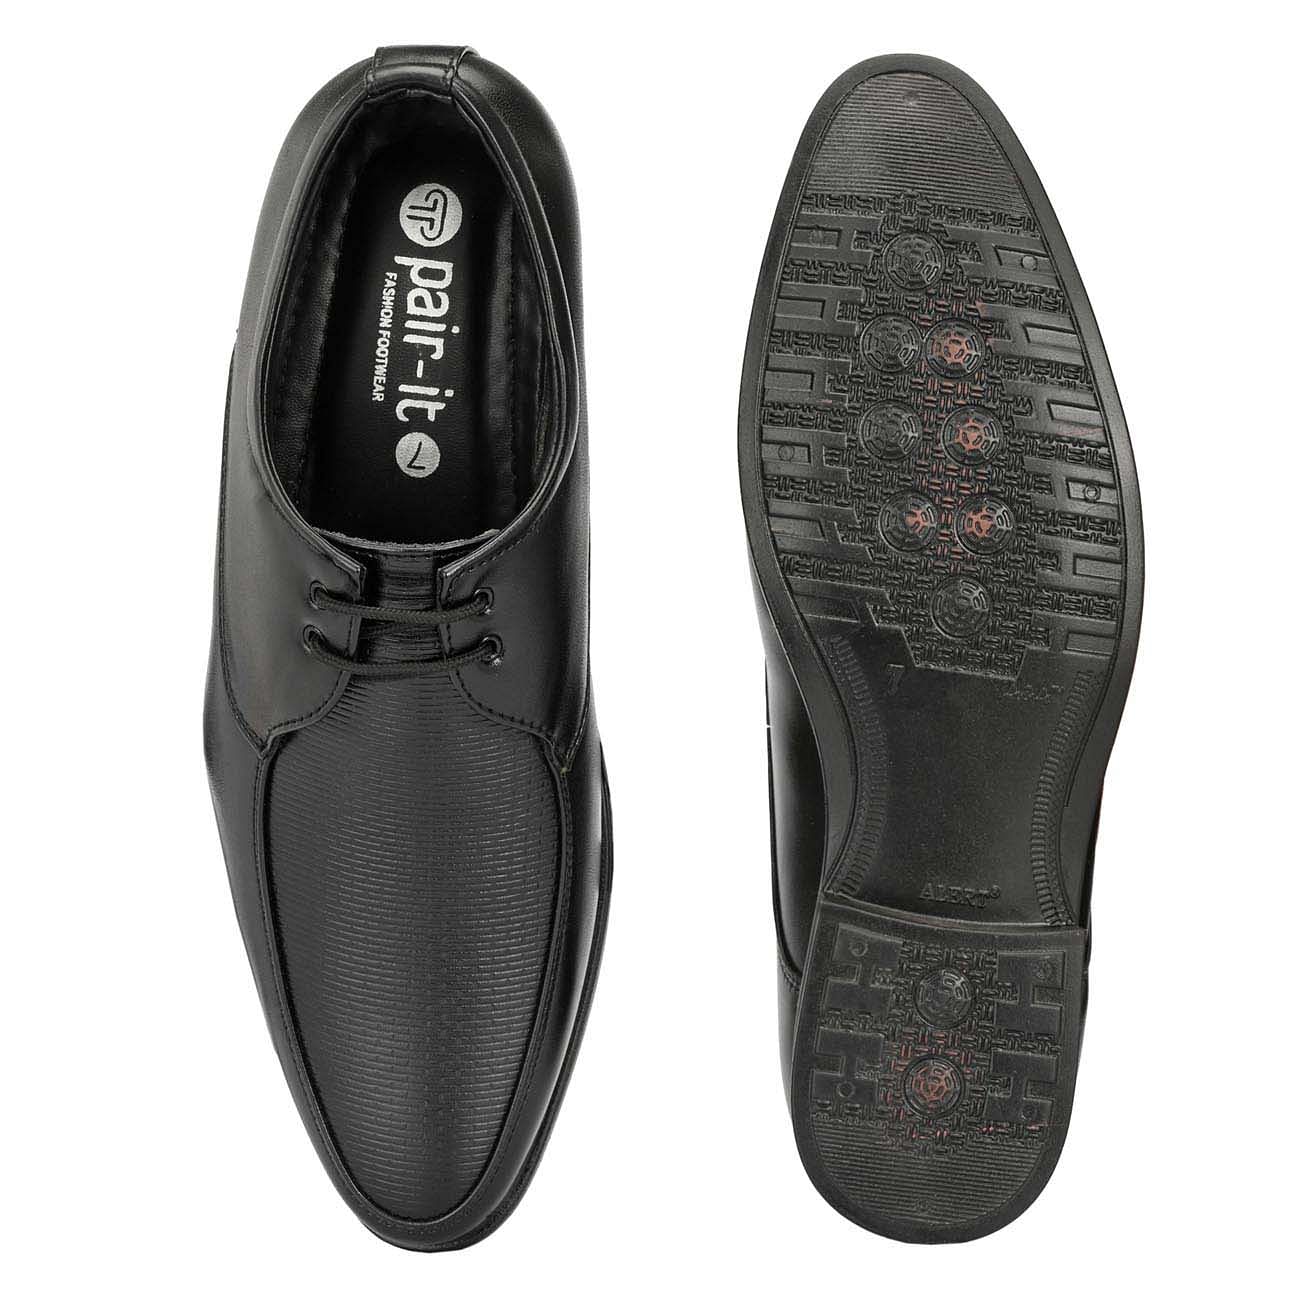 Pair-it Men derby Formal Shoes - Black - MN-RYDER212